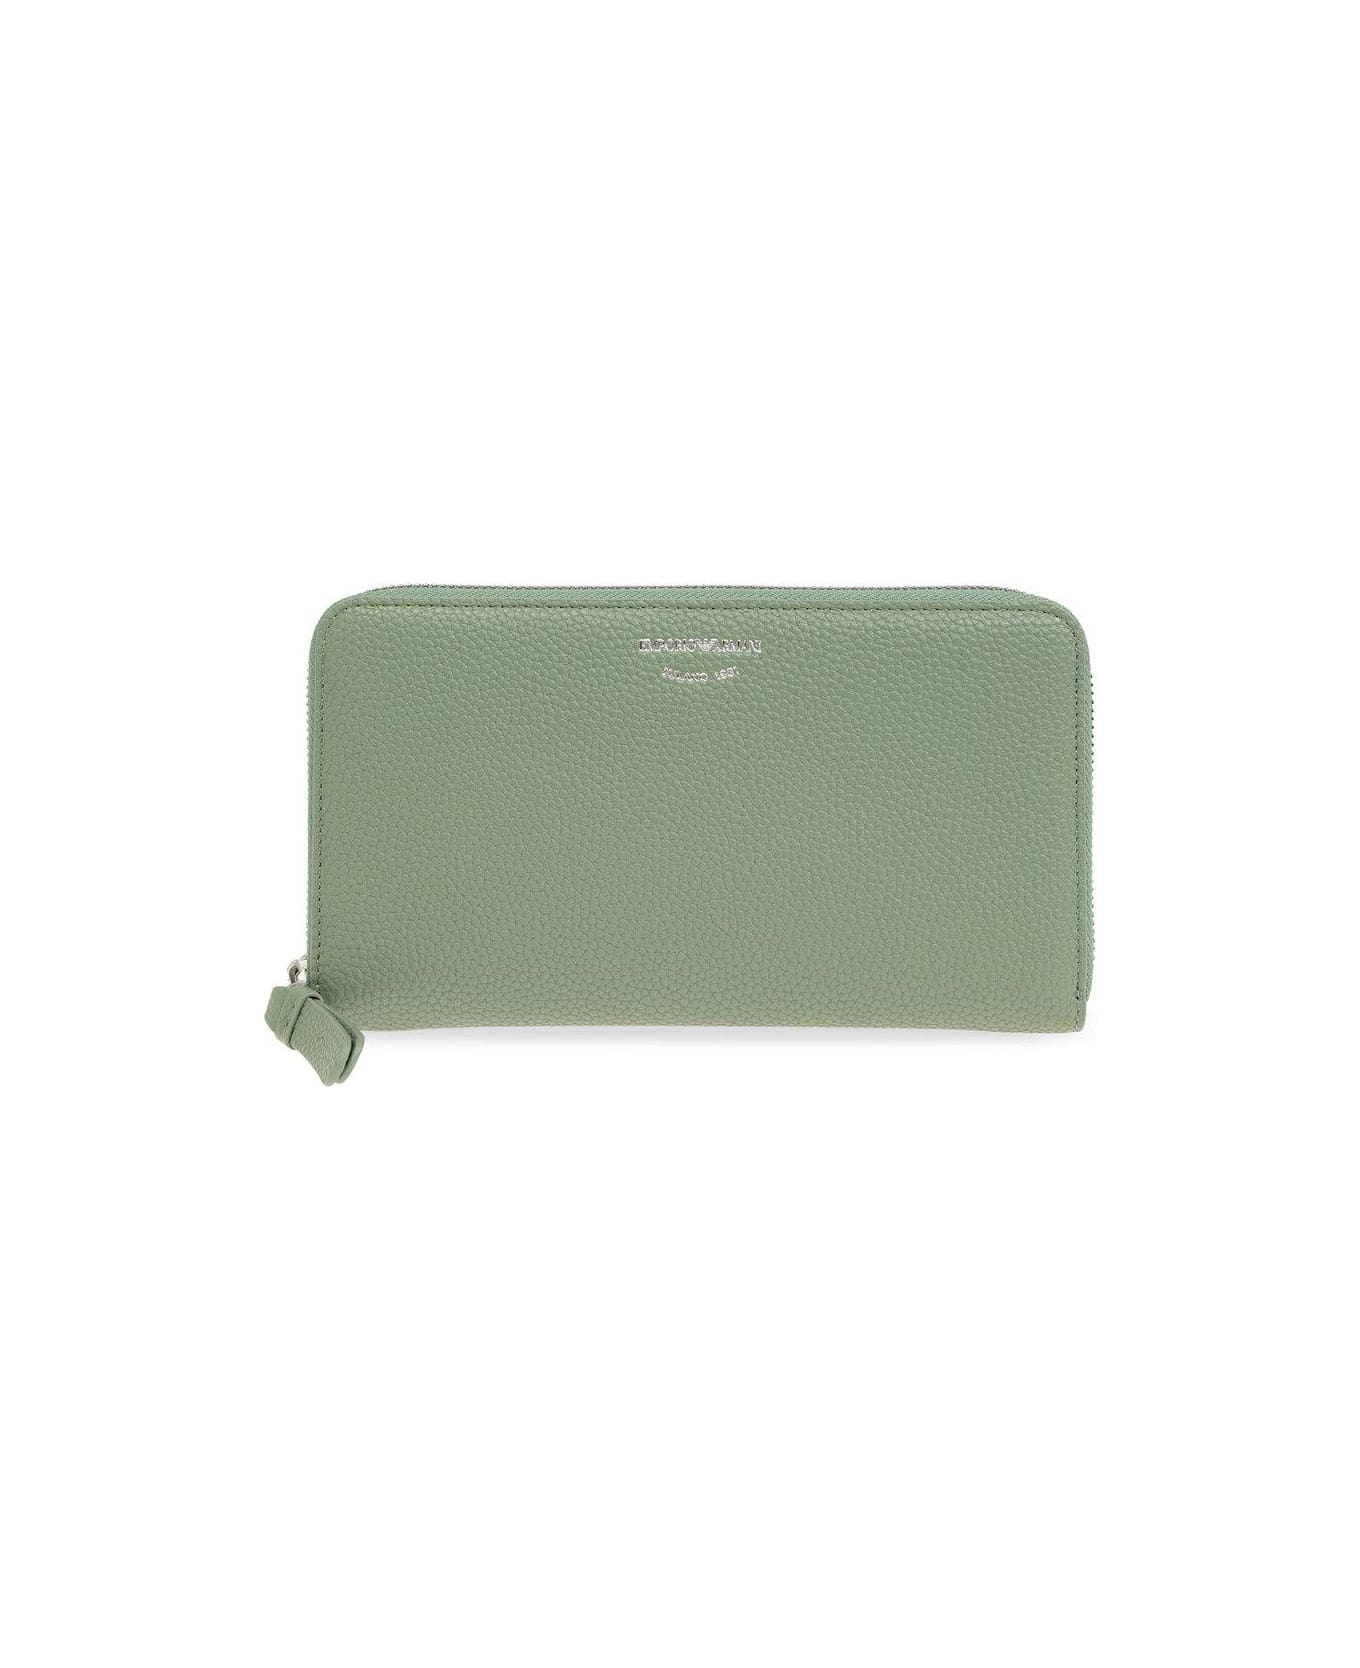 Emporio Armani Wallet With Logo - Green 財布